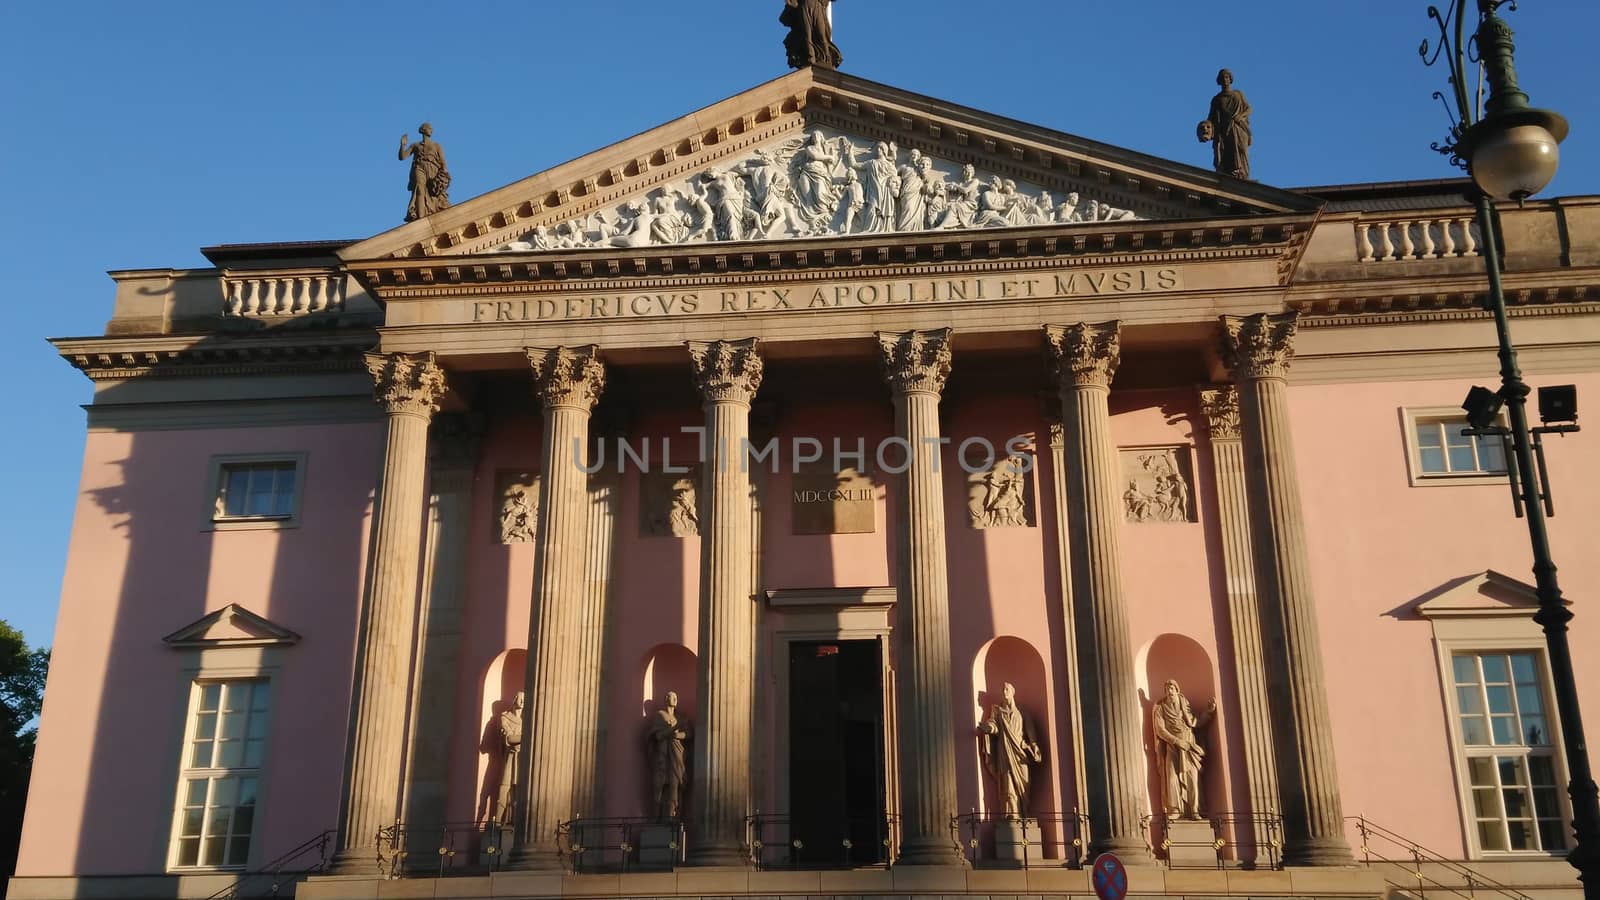 German State Opera in Berlin by Lattwein